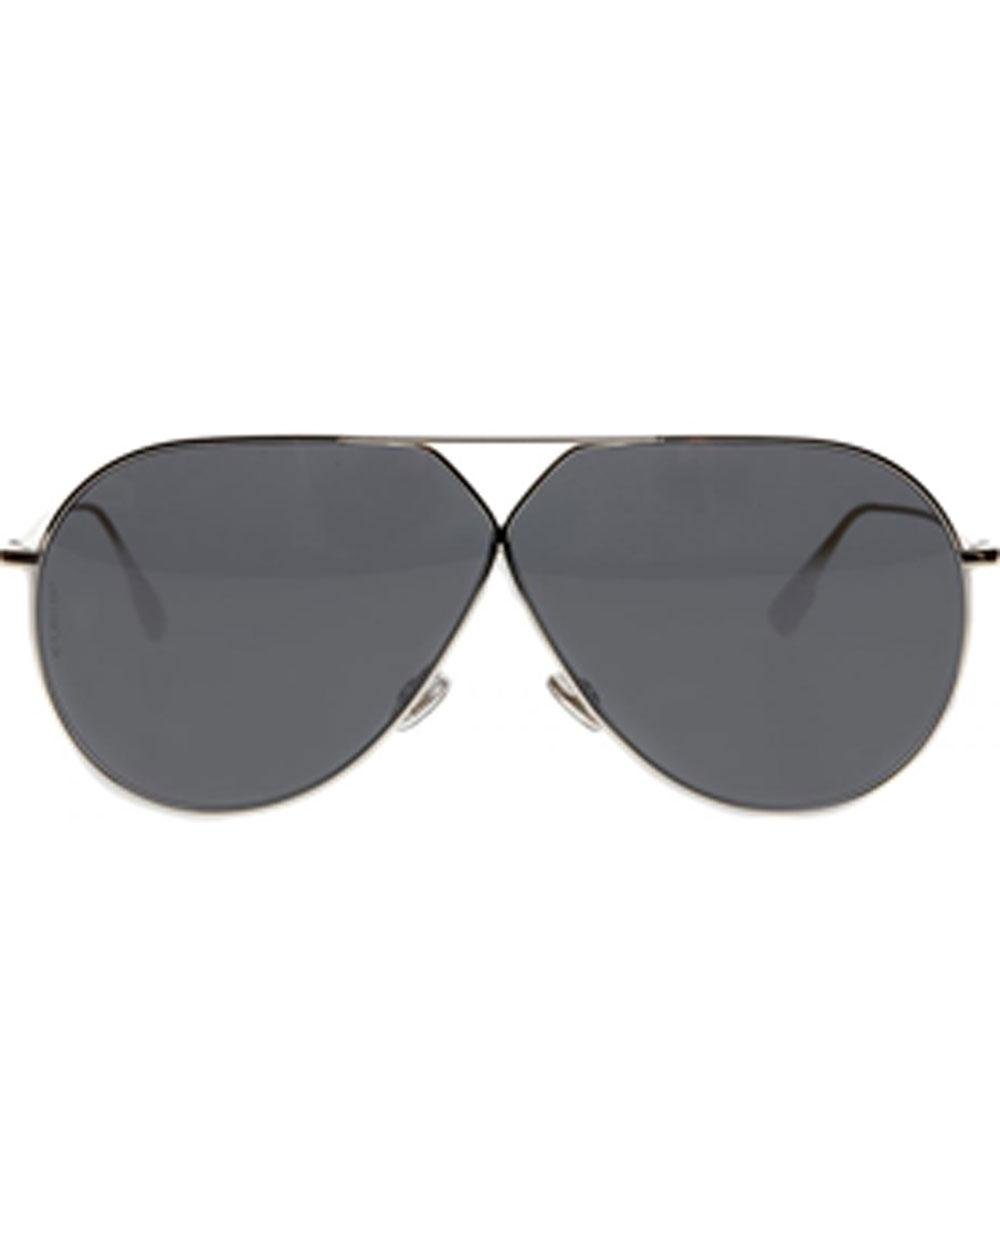 dior stellaire sunglasses black